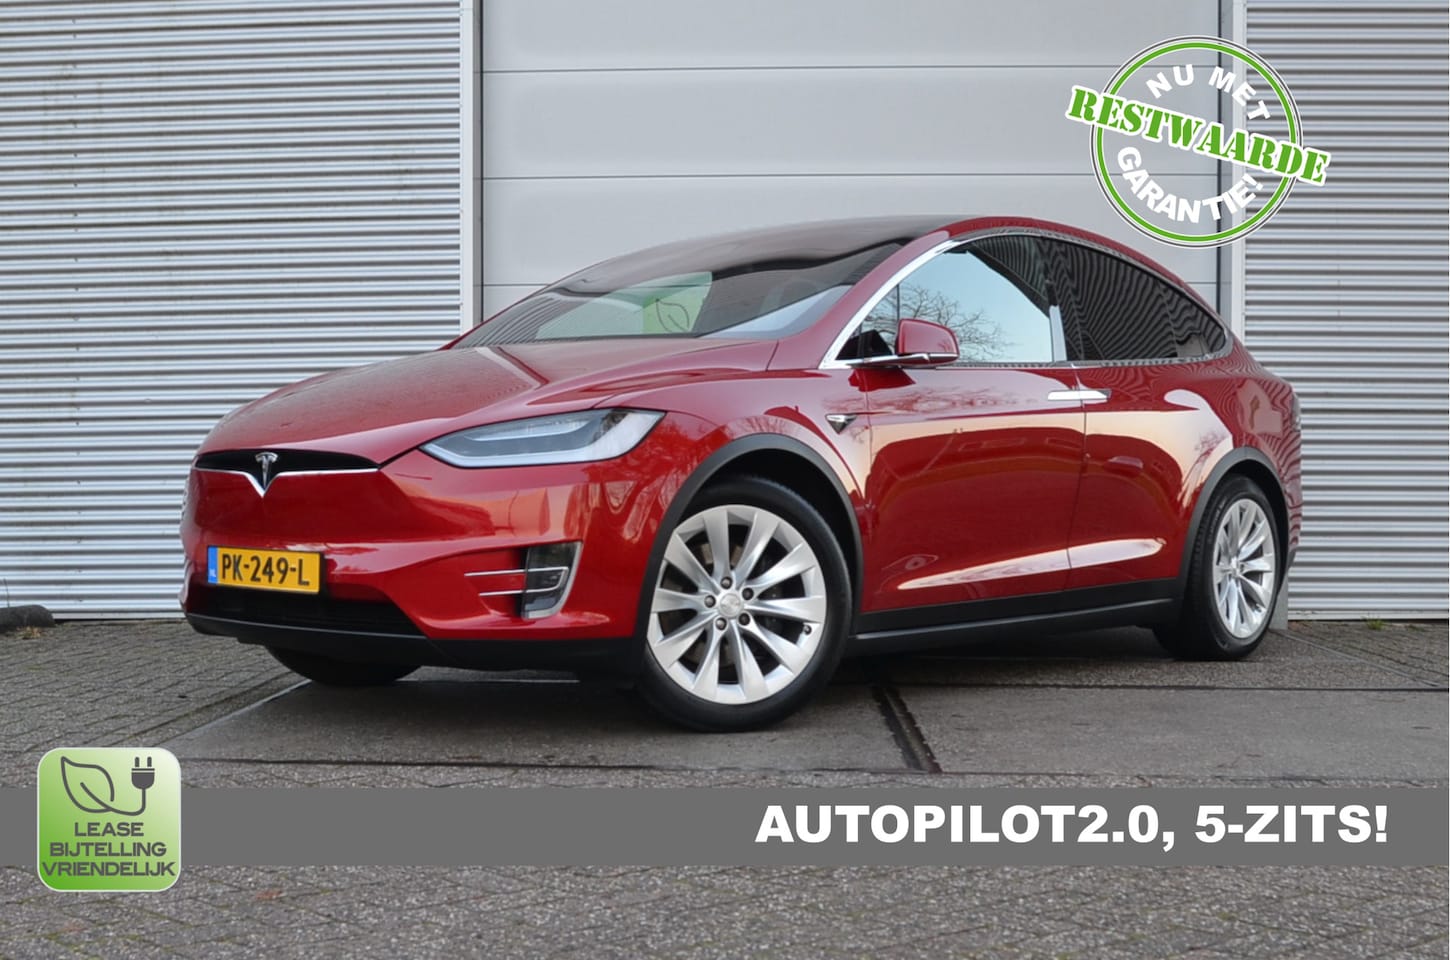 God Laat je zien Dictatuur Tesla Model X 75D (4x4) AutoPIlot2.0, incl. BTW 2017 Elektrisch - Occasion  te koop op AutoWereld.nl